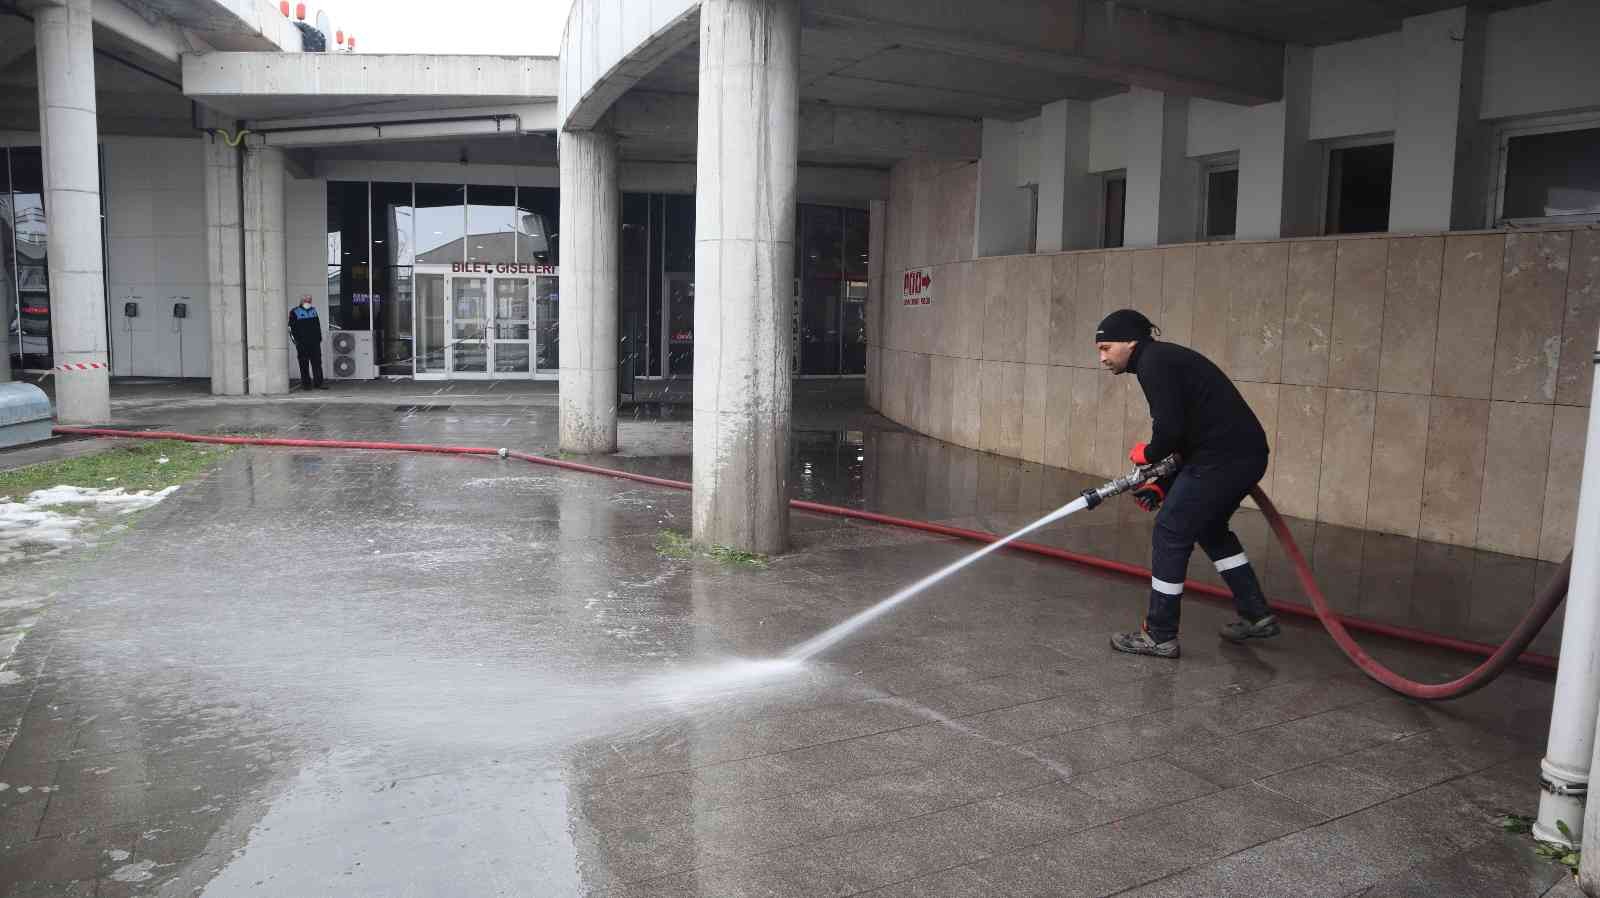 Düzce Belediyesi terminalde temizlik yaptı #duzce